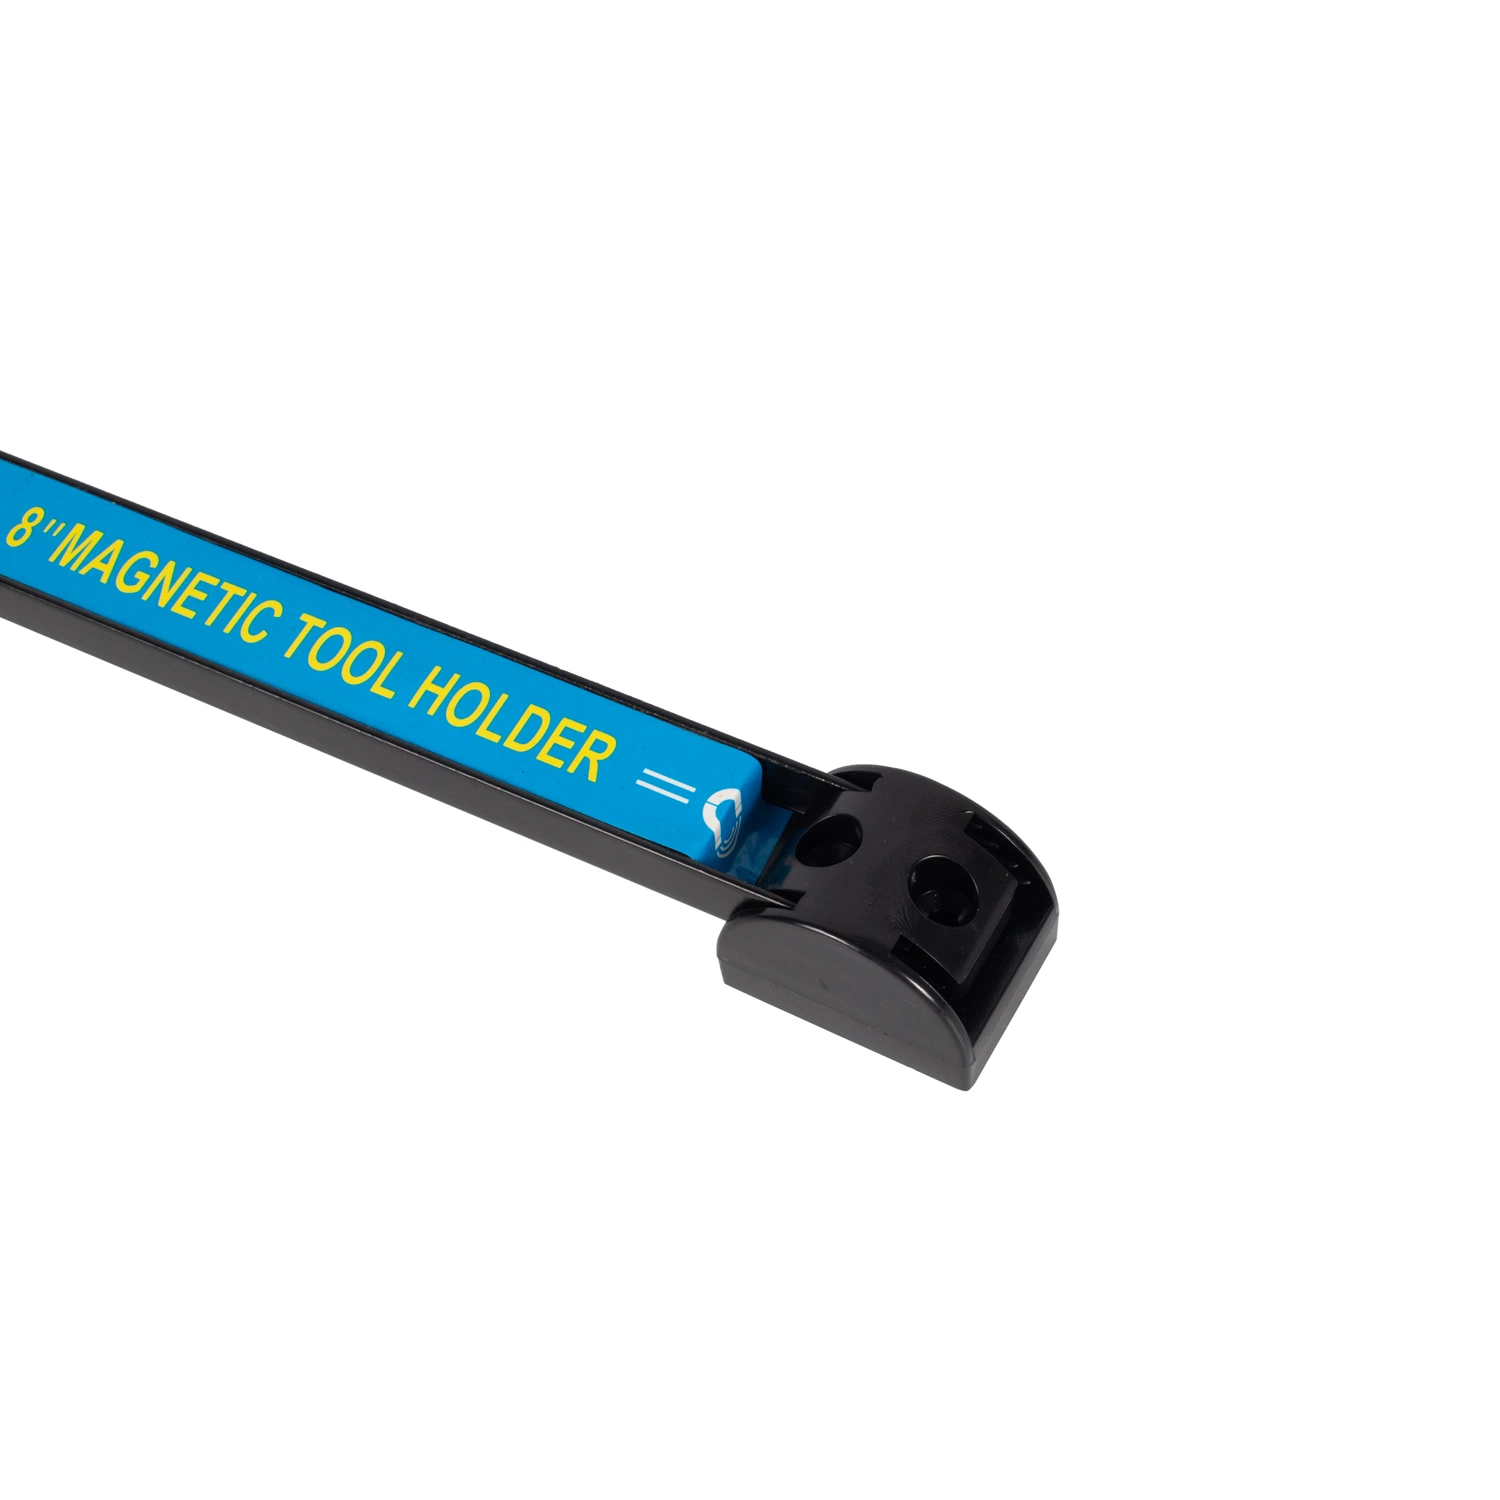 Magnetic Tool Holder Magnetic Tool Holder Bar Screwdriver Tool Holder Tray Holder Magnet